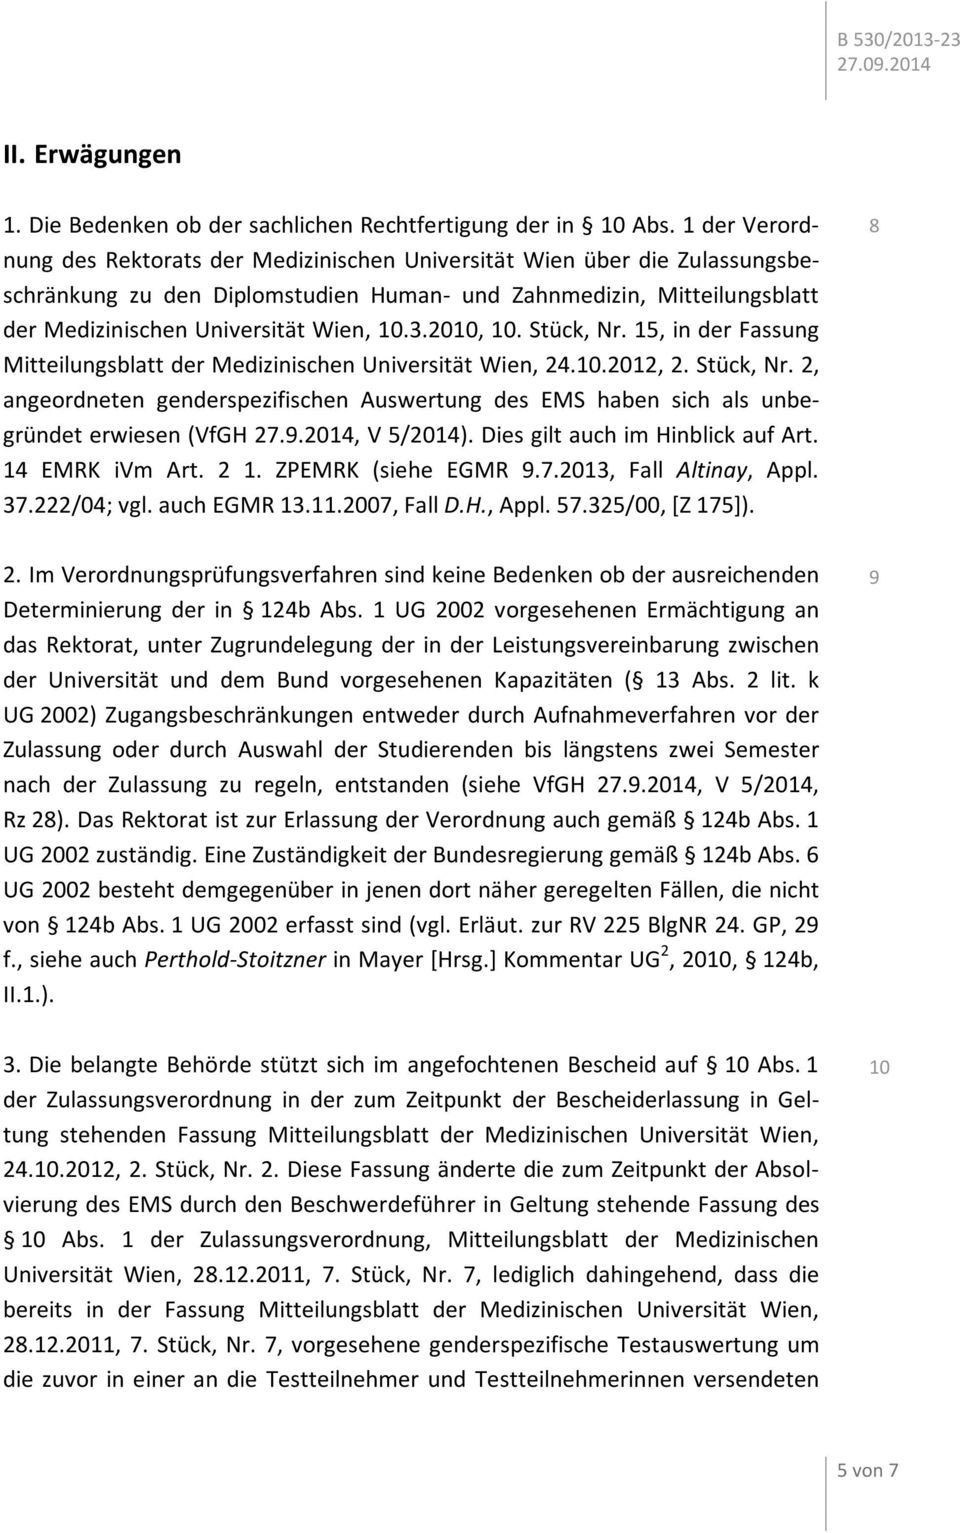 3.2010, 10. Stück, Nr. 15, in der Fassung Mitteilungsblatt der Medizinischen Universität Wien, 24.10.2012, 2. Stück, Nr. 2, angeordneten genderspezifischen Auswertung des EMS haben sich als unbegründet erwiesen (VfGH 27.